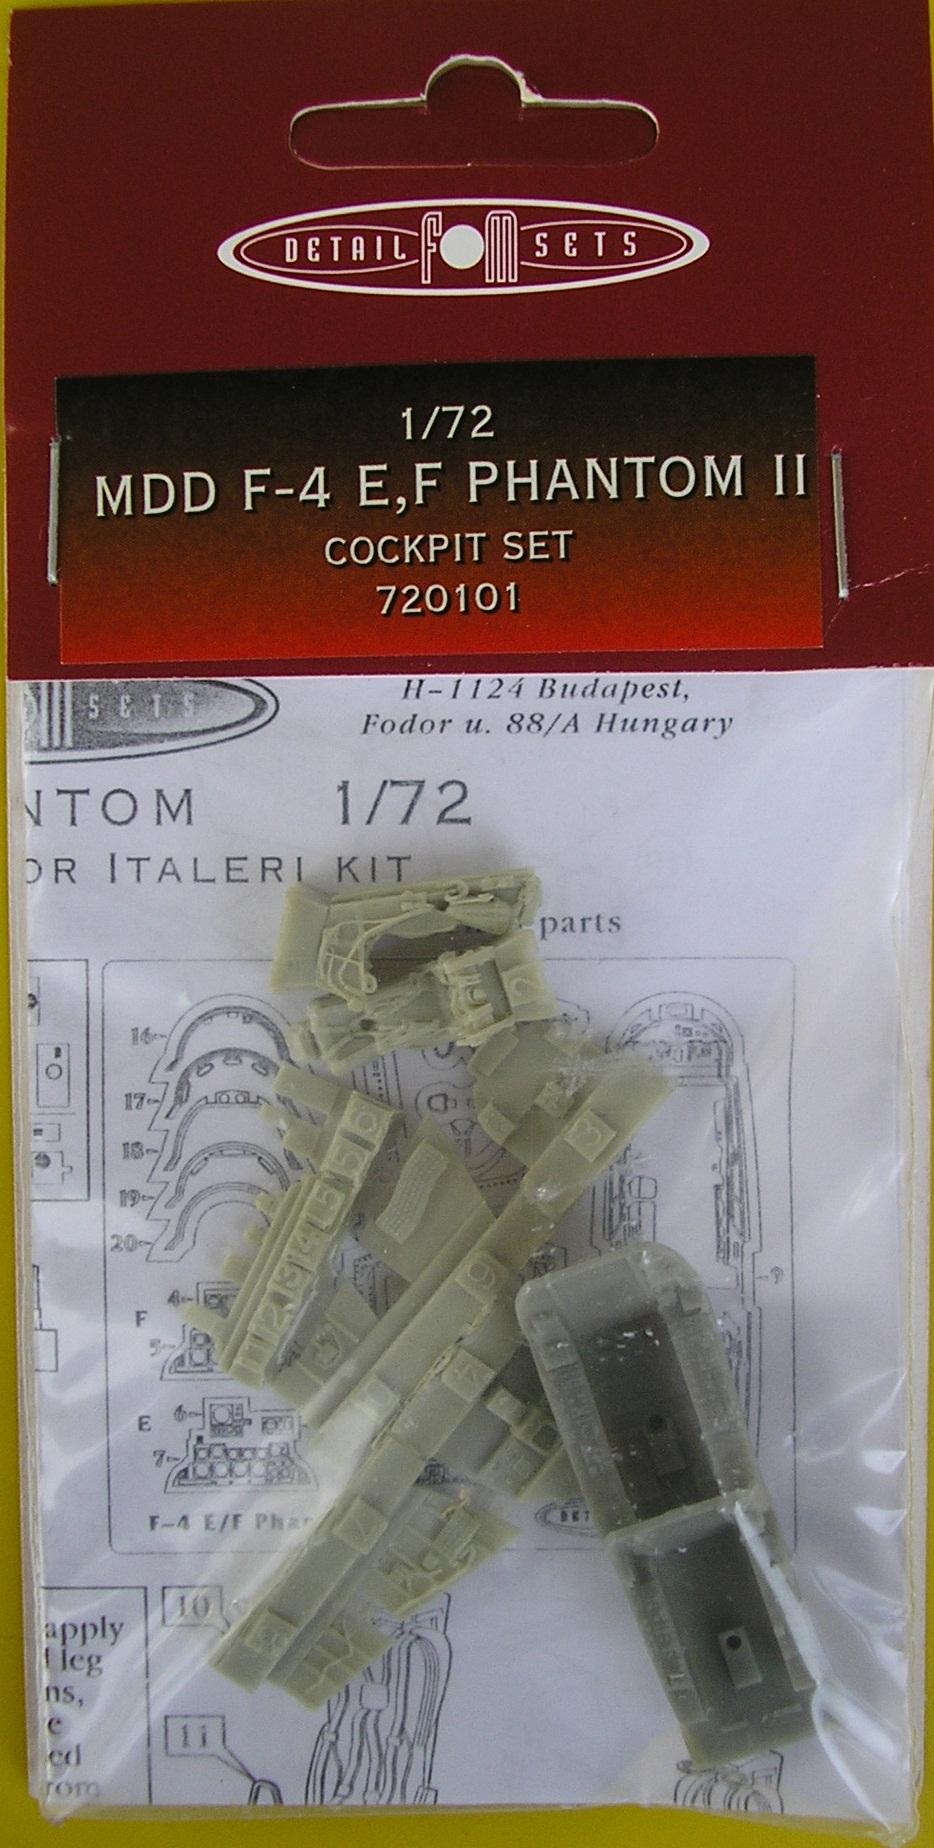 FM - F-4 Phantom kabin

1/72 1900.-Ft